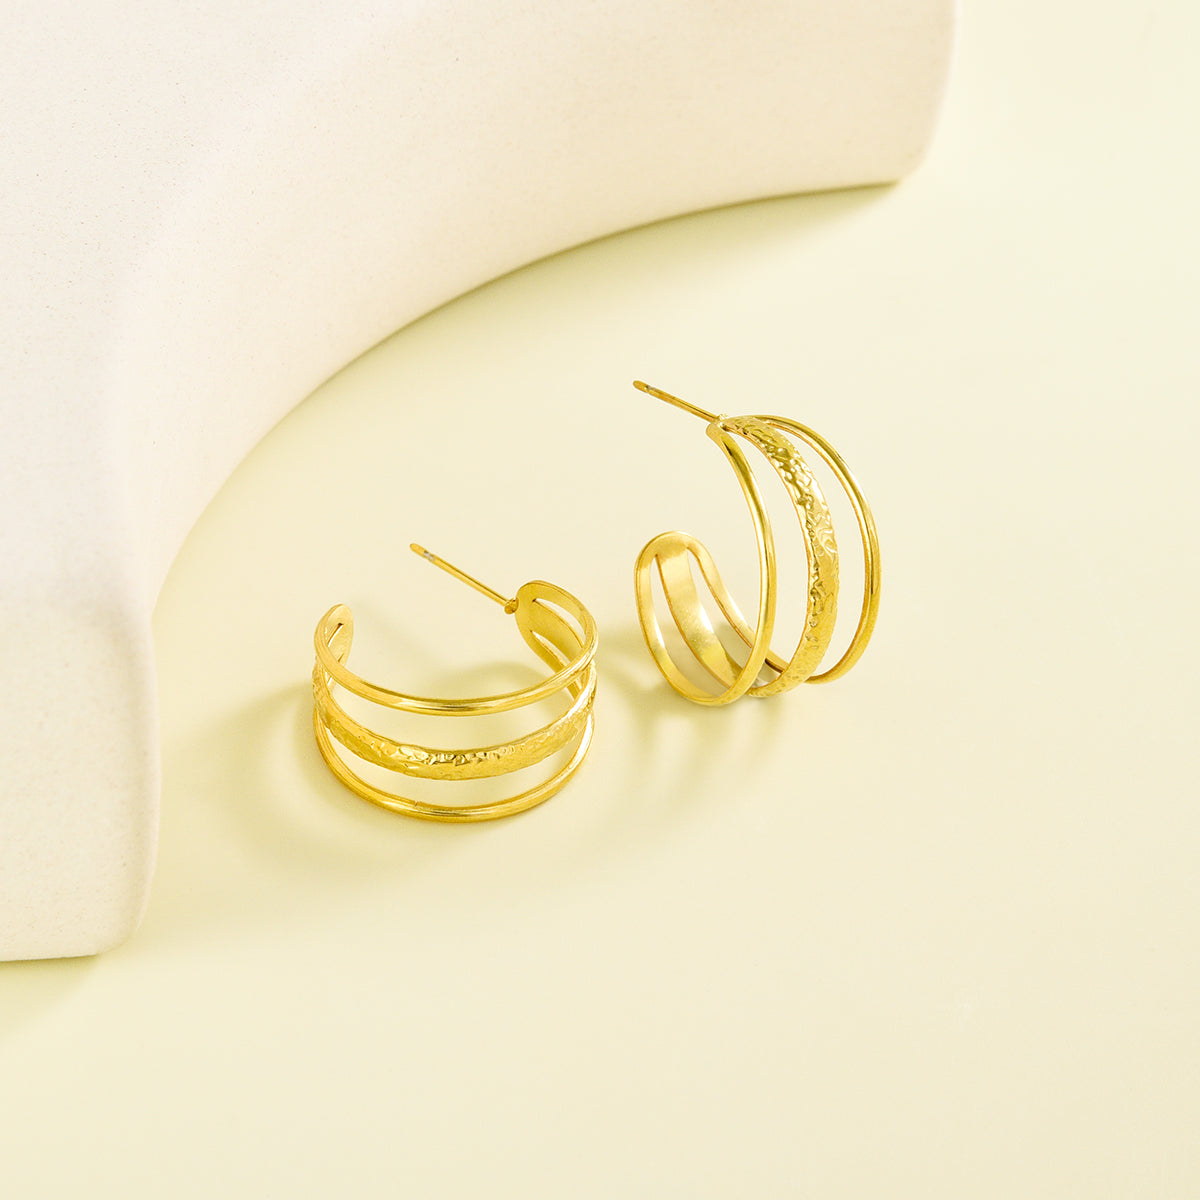 Classy triple layered golden earrings